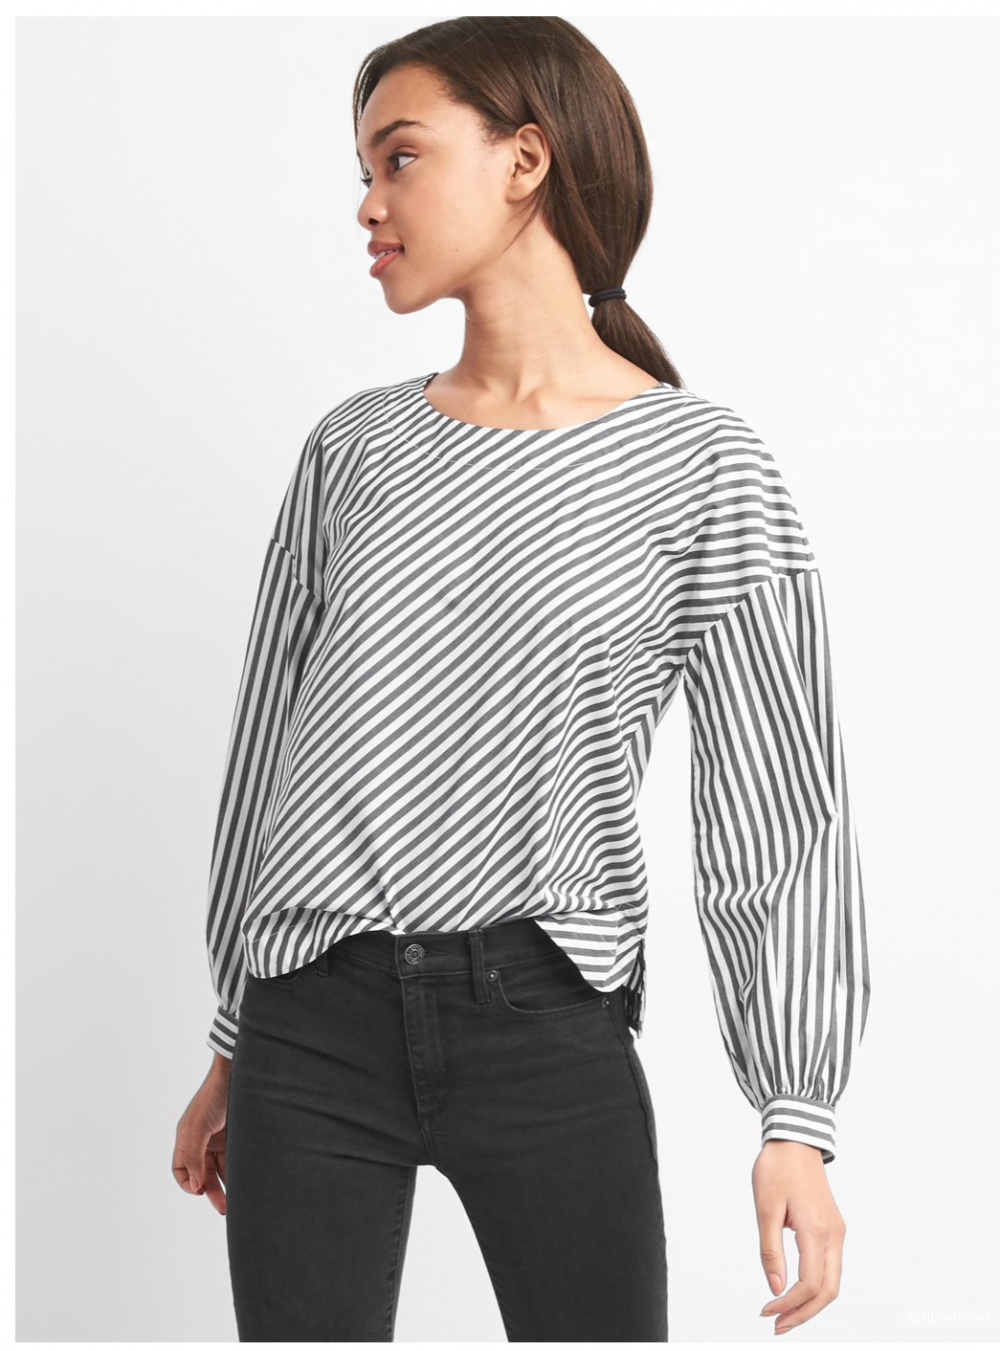 Рубашка Gap, размер S (рос.44-48).